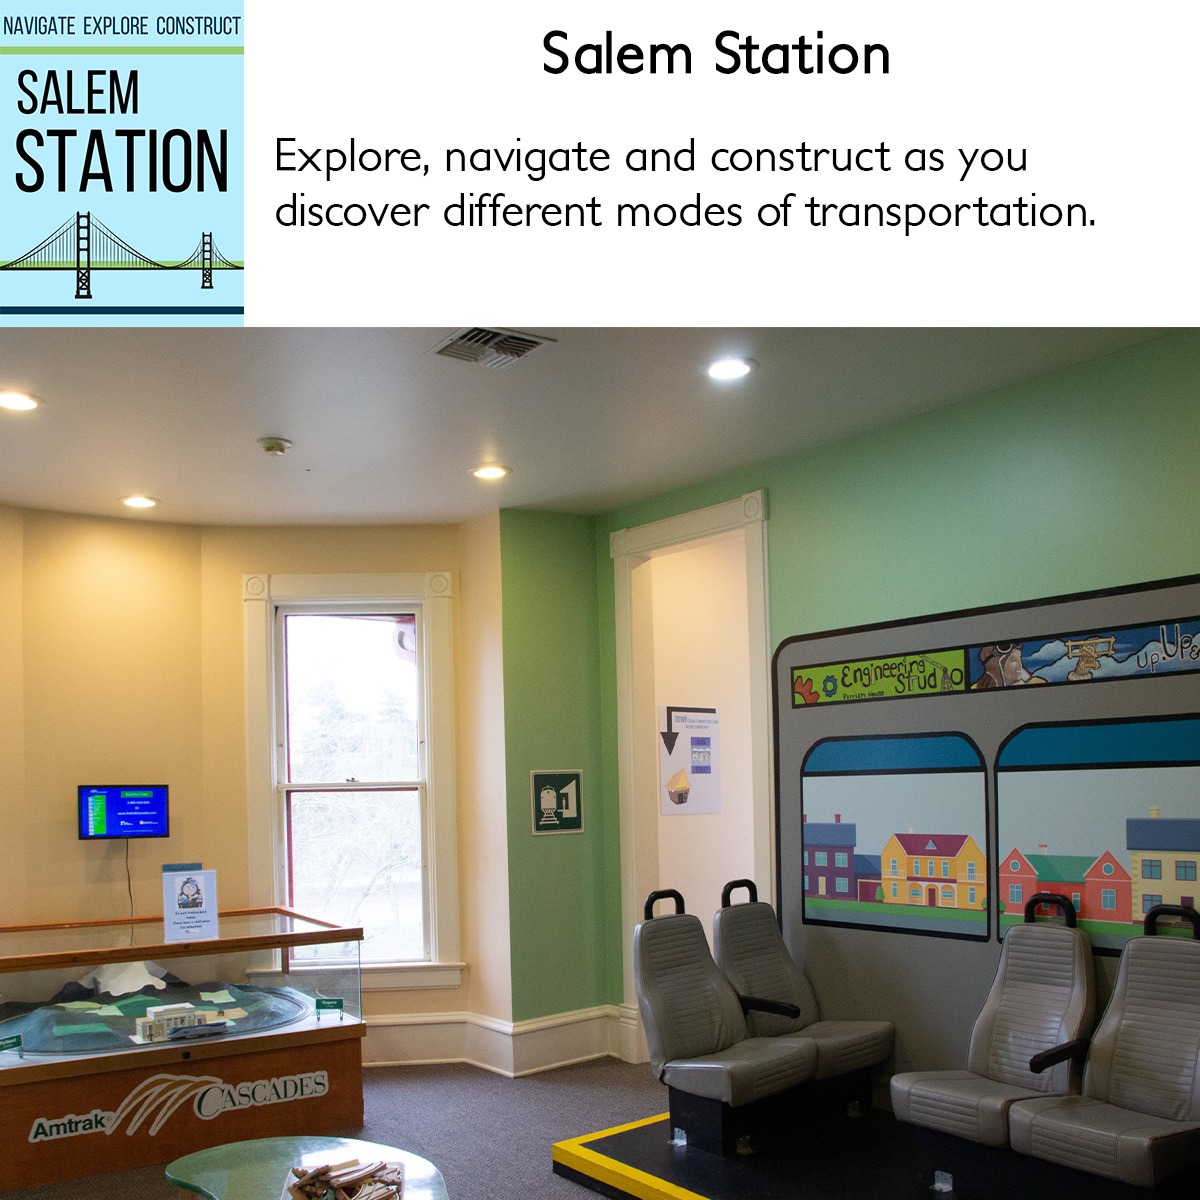 Salem Station